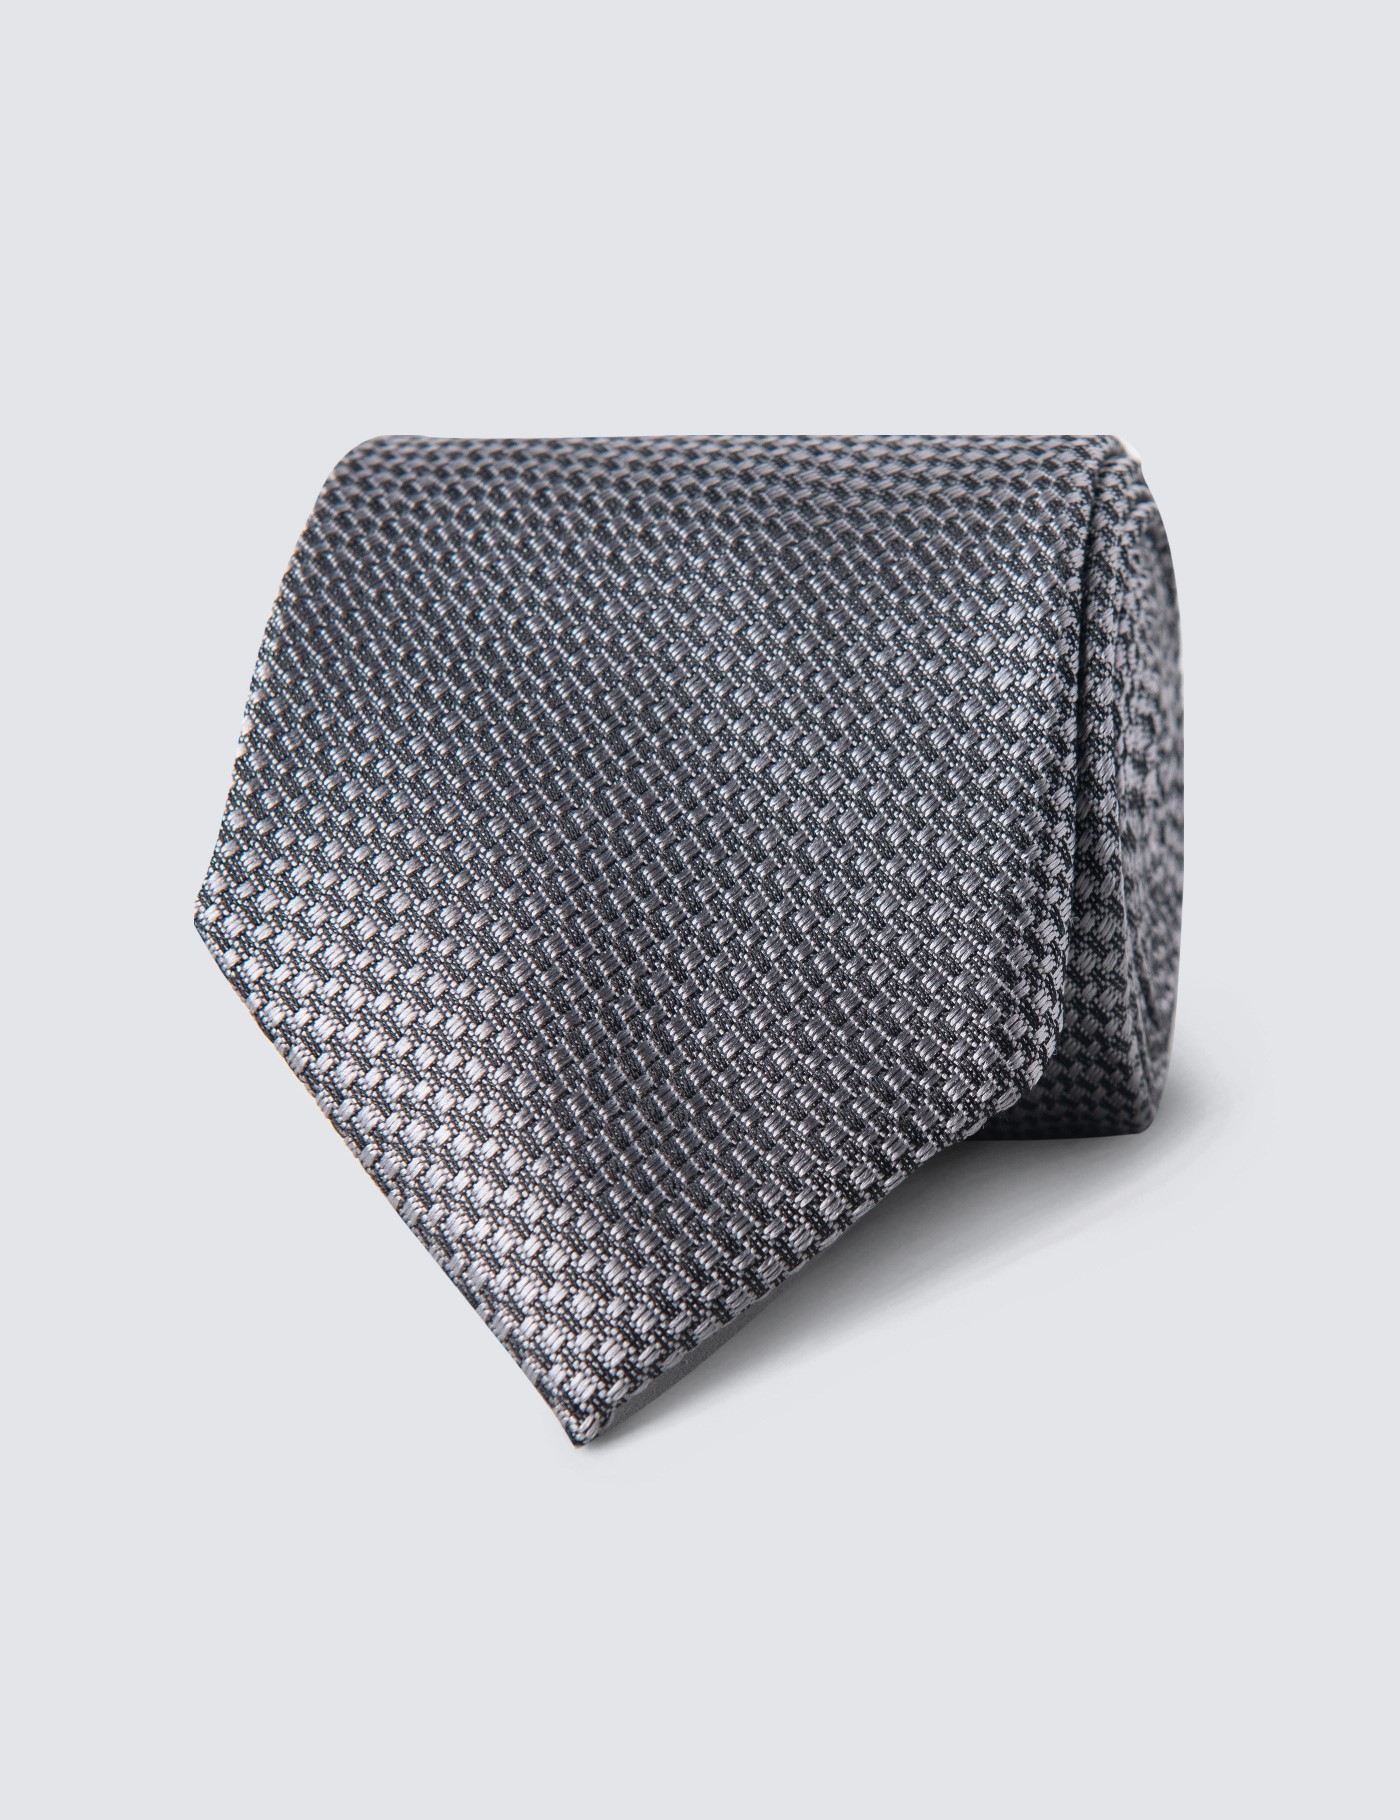 Grey Textured Tie - 100% Silk